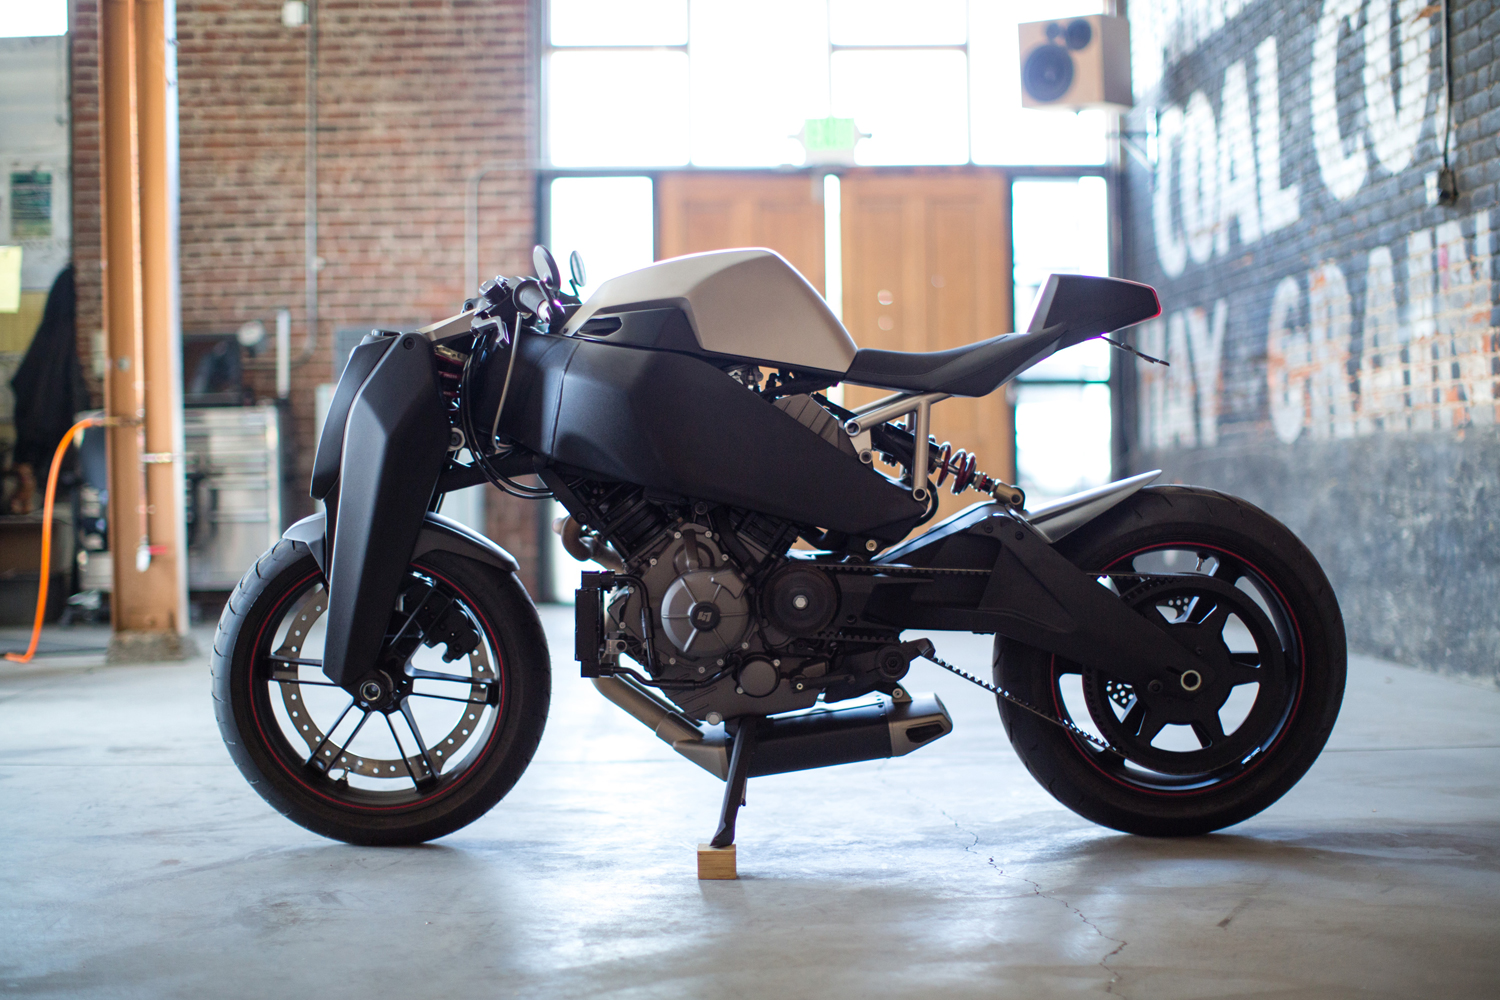 Ronin 47: a moto superesportiva com design futurista e edição limitada